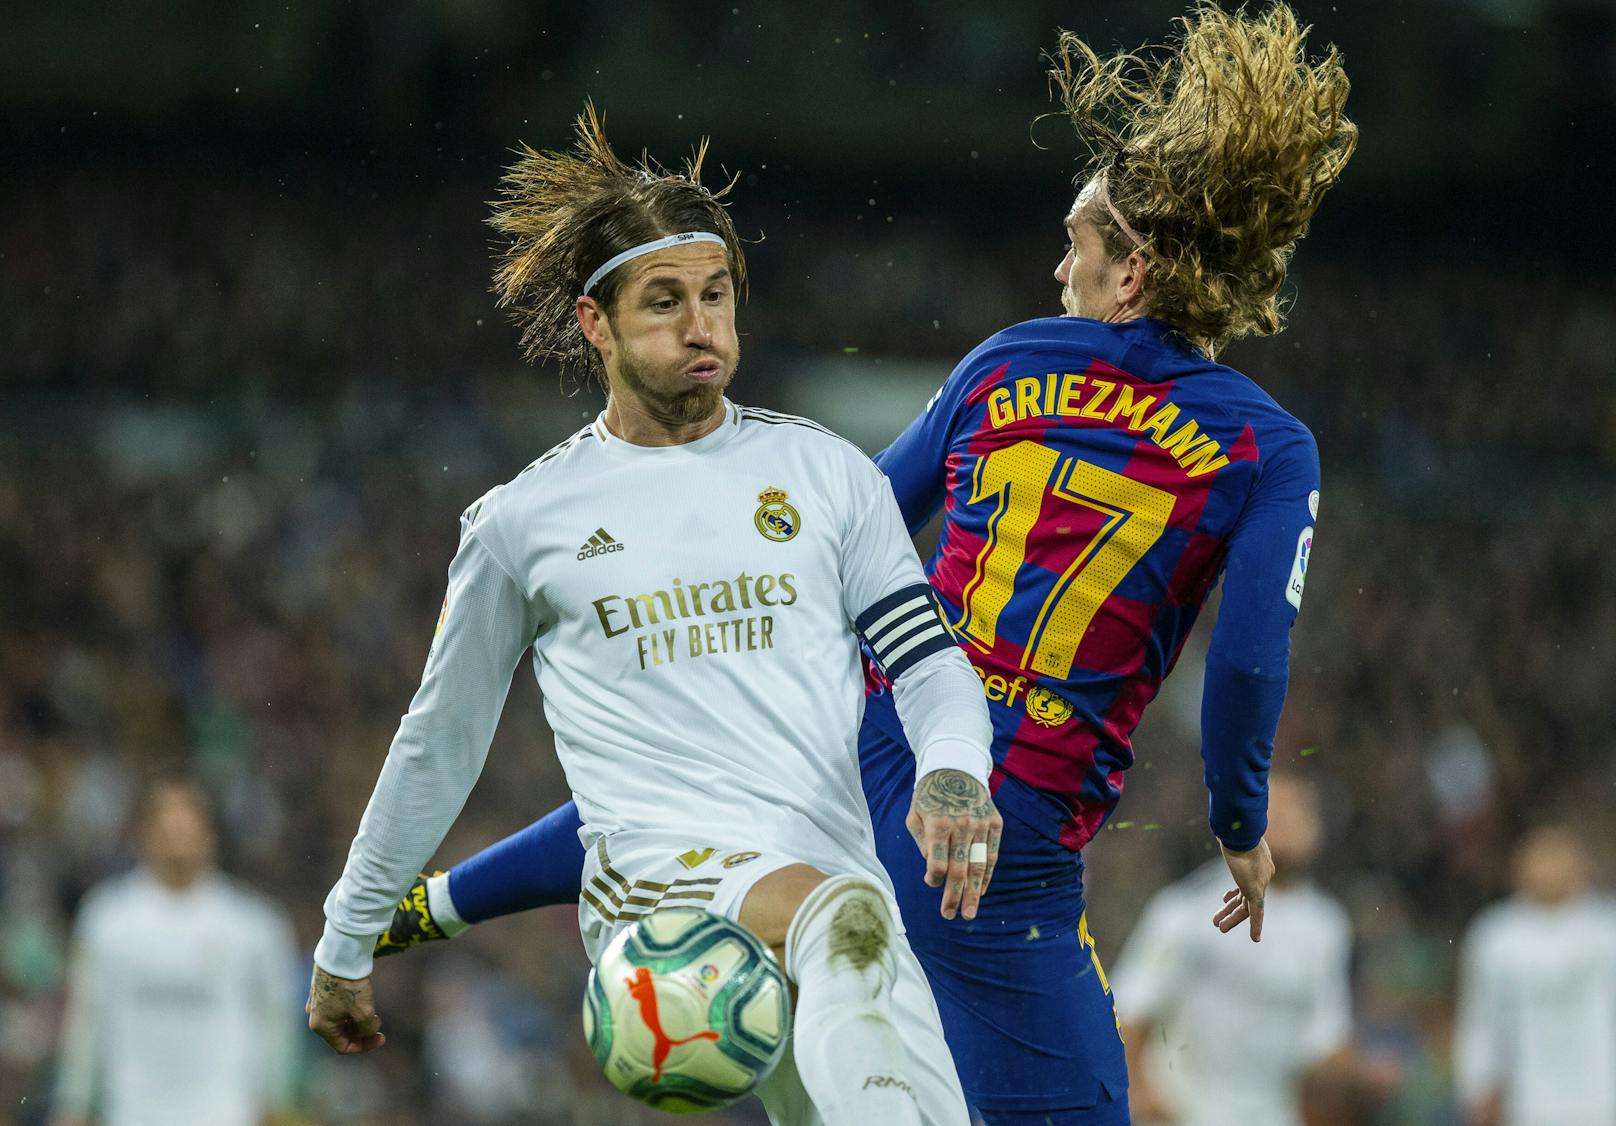 Auch Ramos (Real) und Griezmann (Barcelona) nehmen den Spielbetrieb auf.